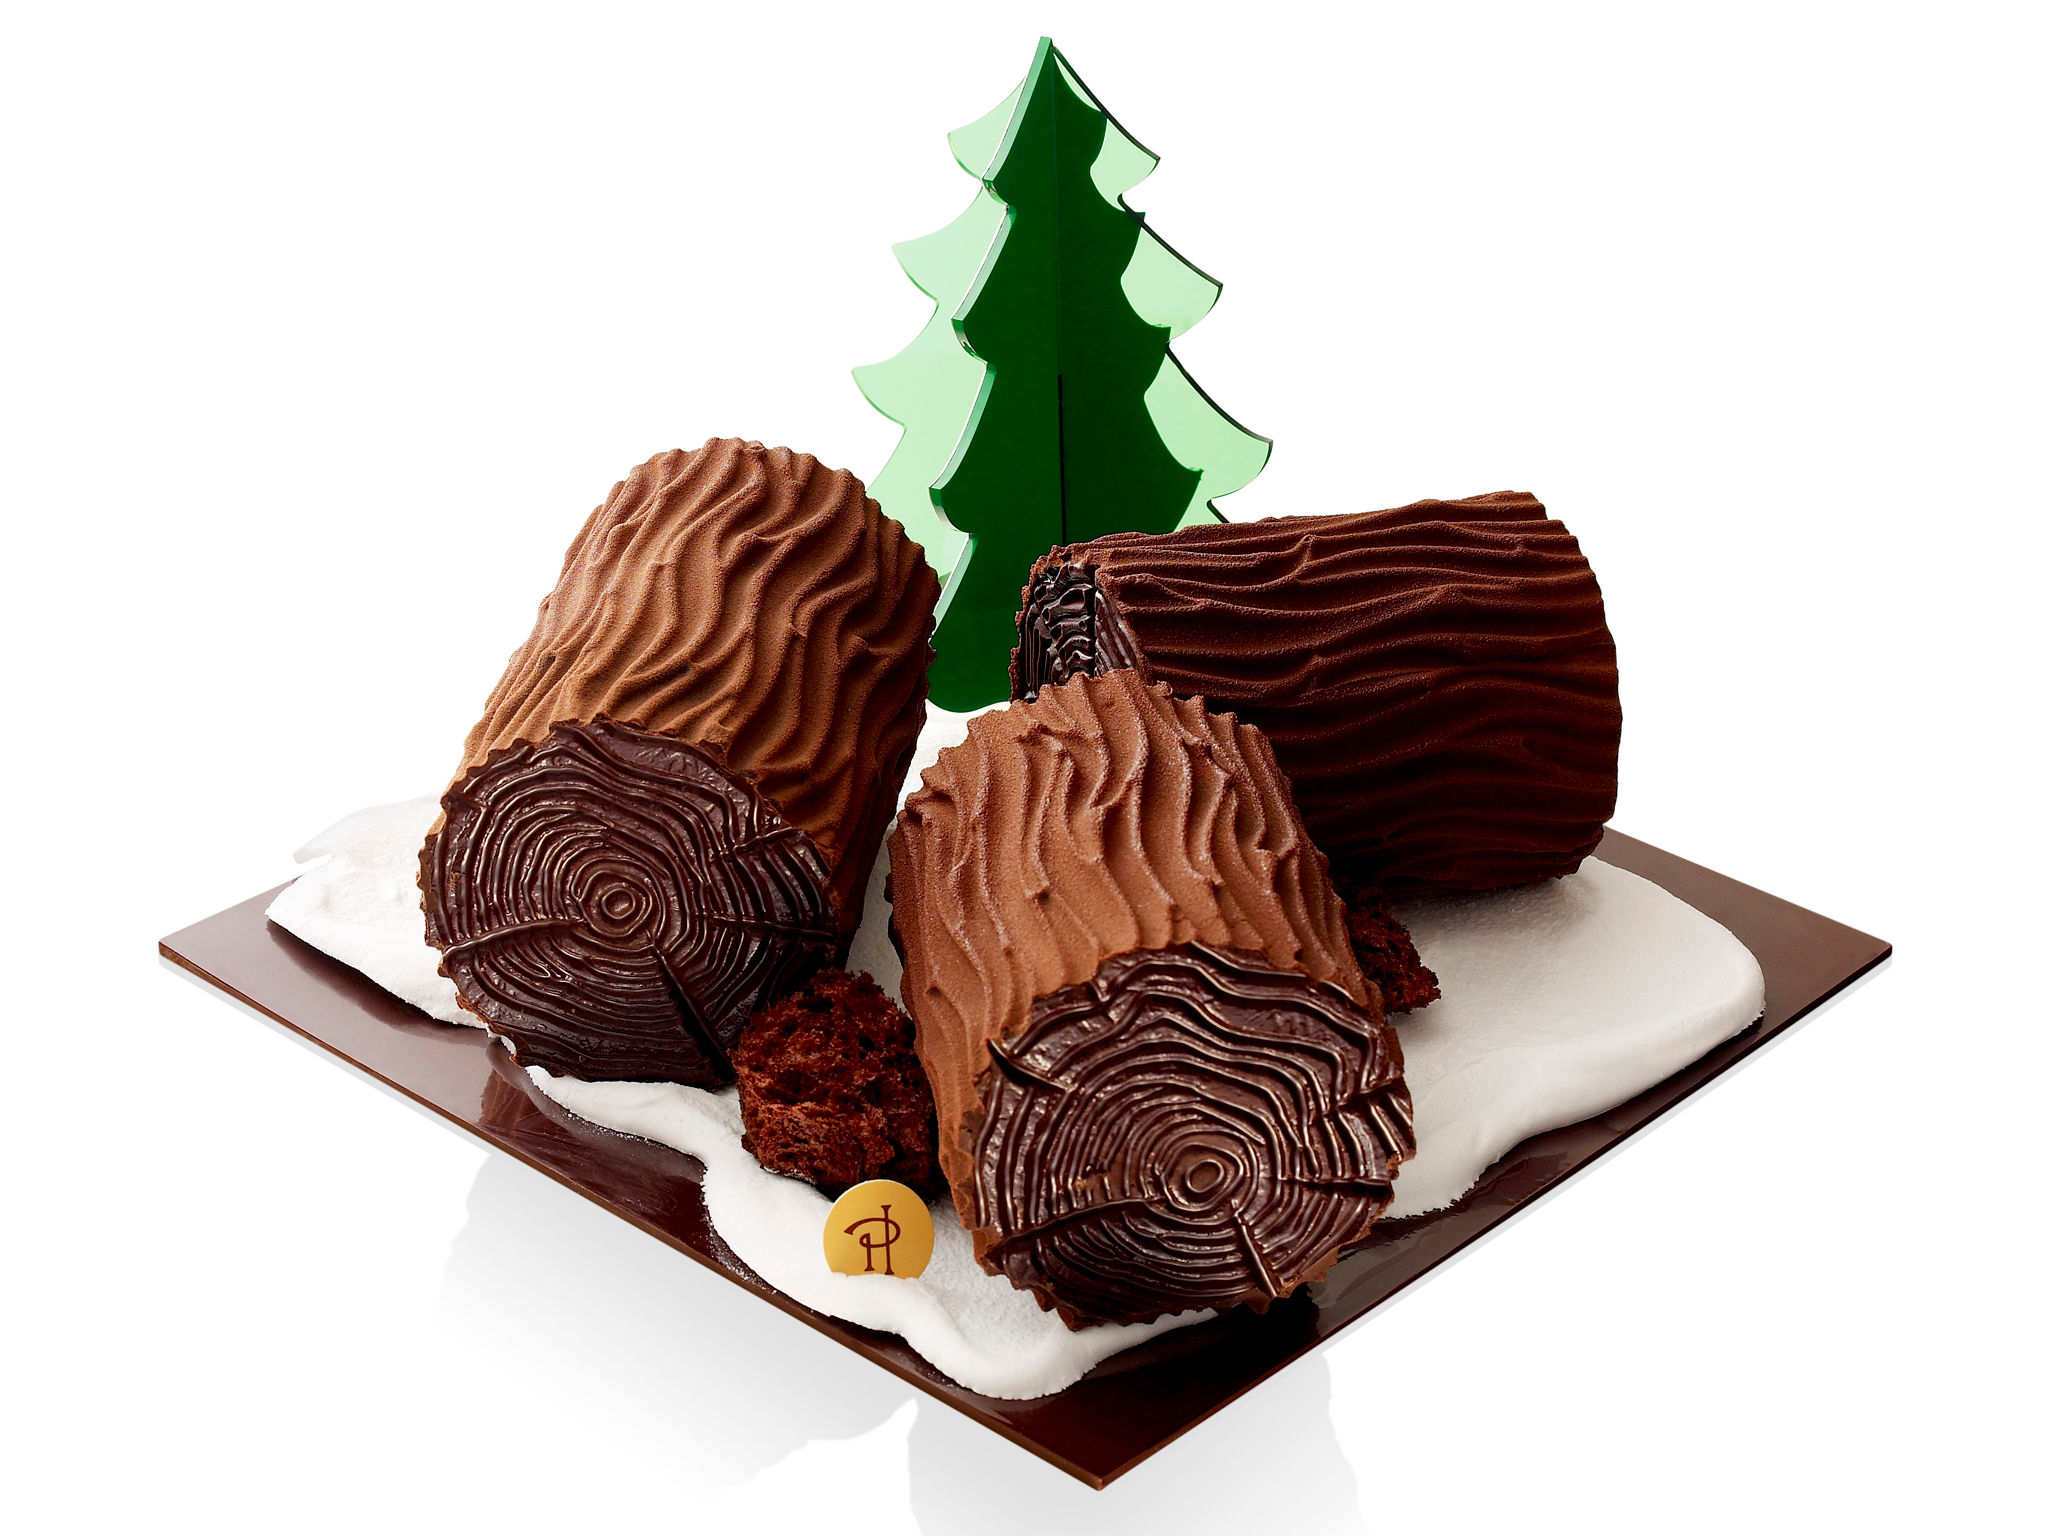 Truffe De Chocolat De Luxe En Boîte Mignonne Illustration de